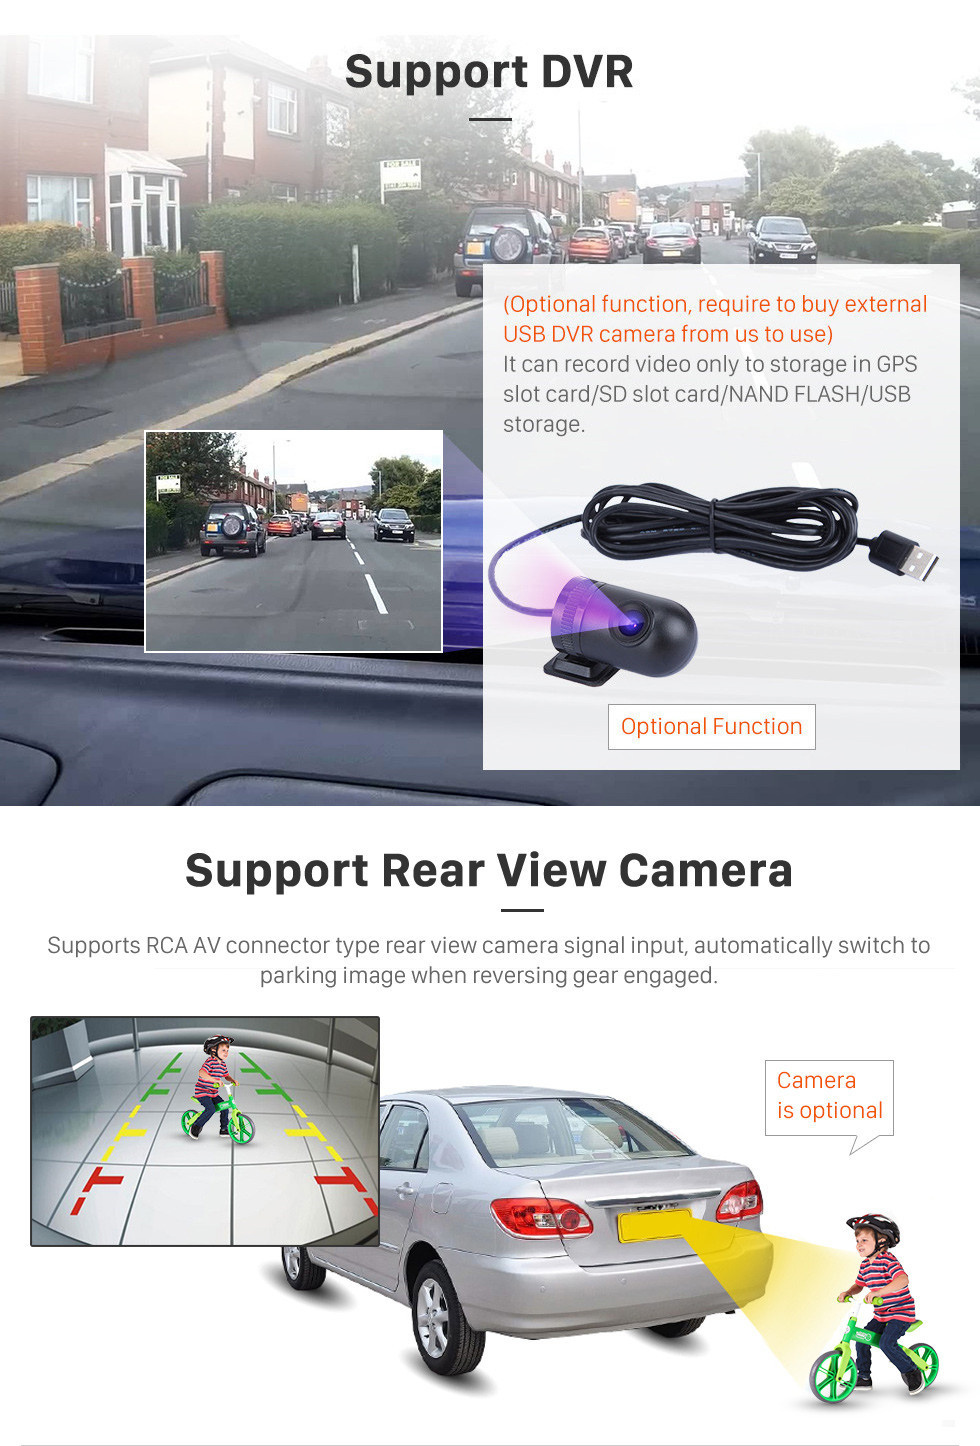 Seicane HD Touchscreen 2014-2016 Geely Emgrand EC7 Android 11.0 9 polegadas Navegação GPS Rádio Bluetooth WIFI AUX Suporte USB Carplay DAB + DVR OBD2